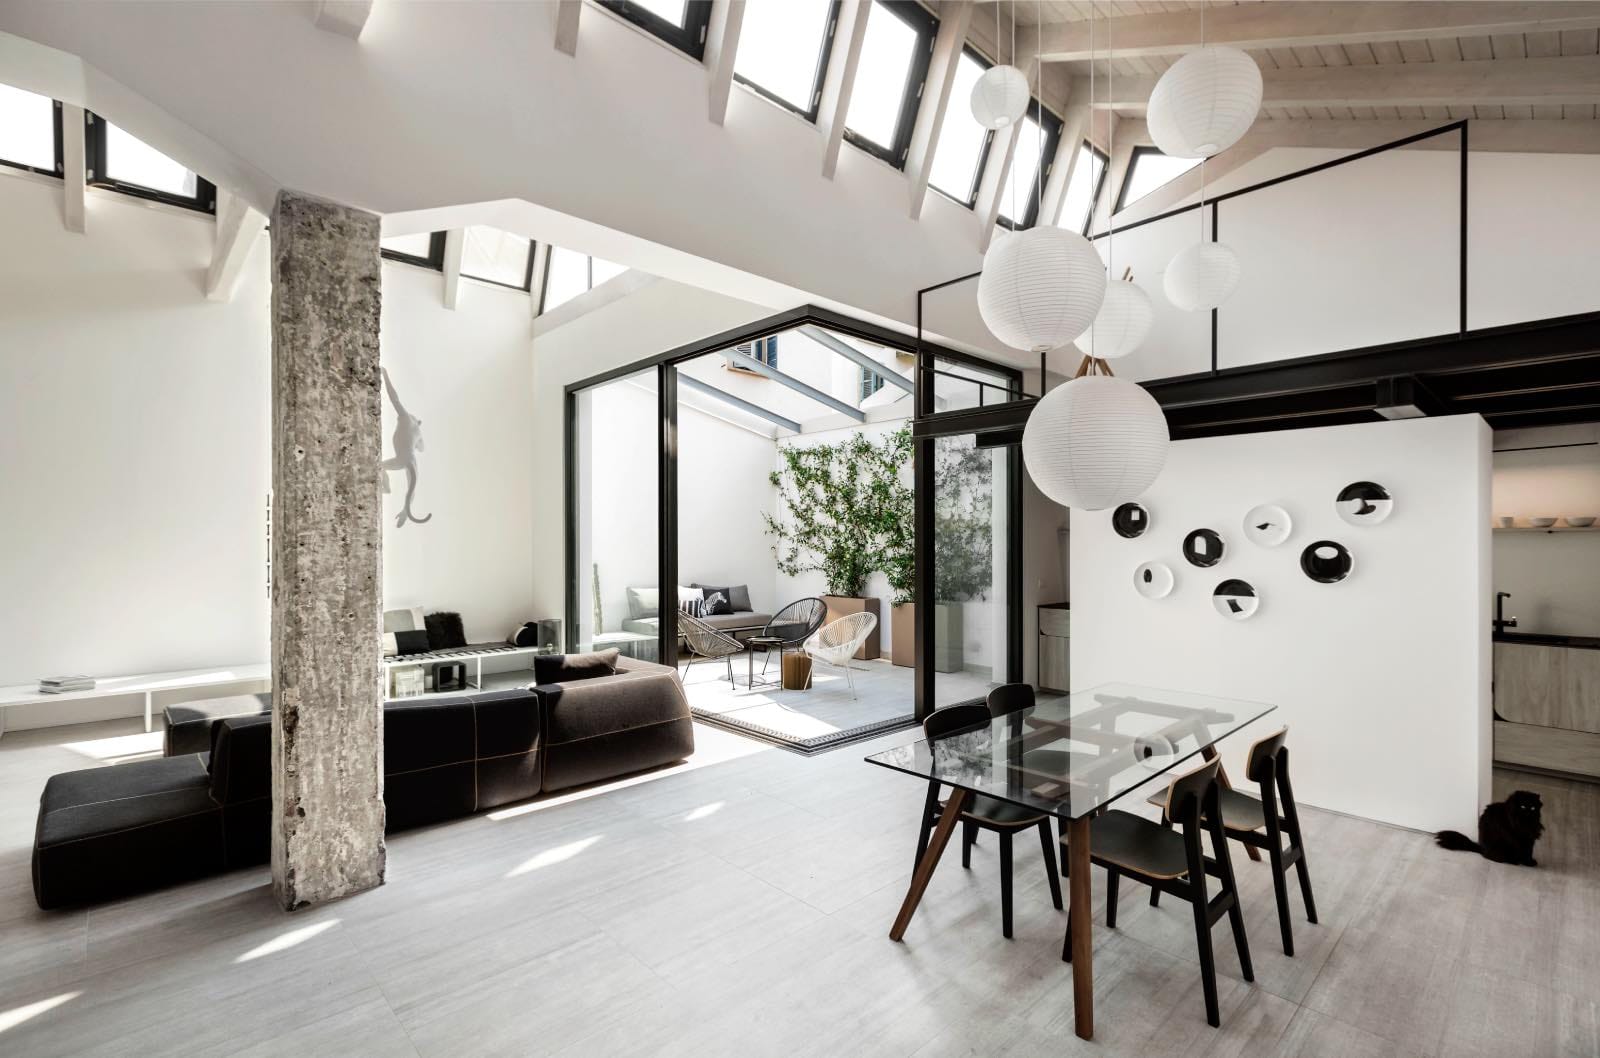 loft de estilo industrial moderno con sala de estar, comedor, cocina, terraza y altillo